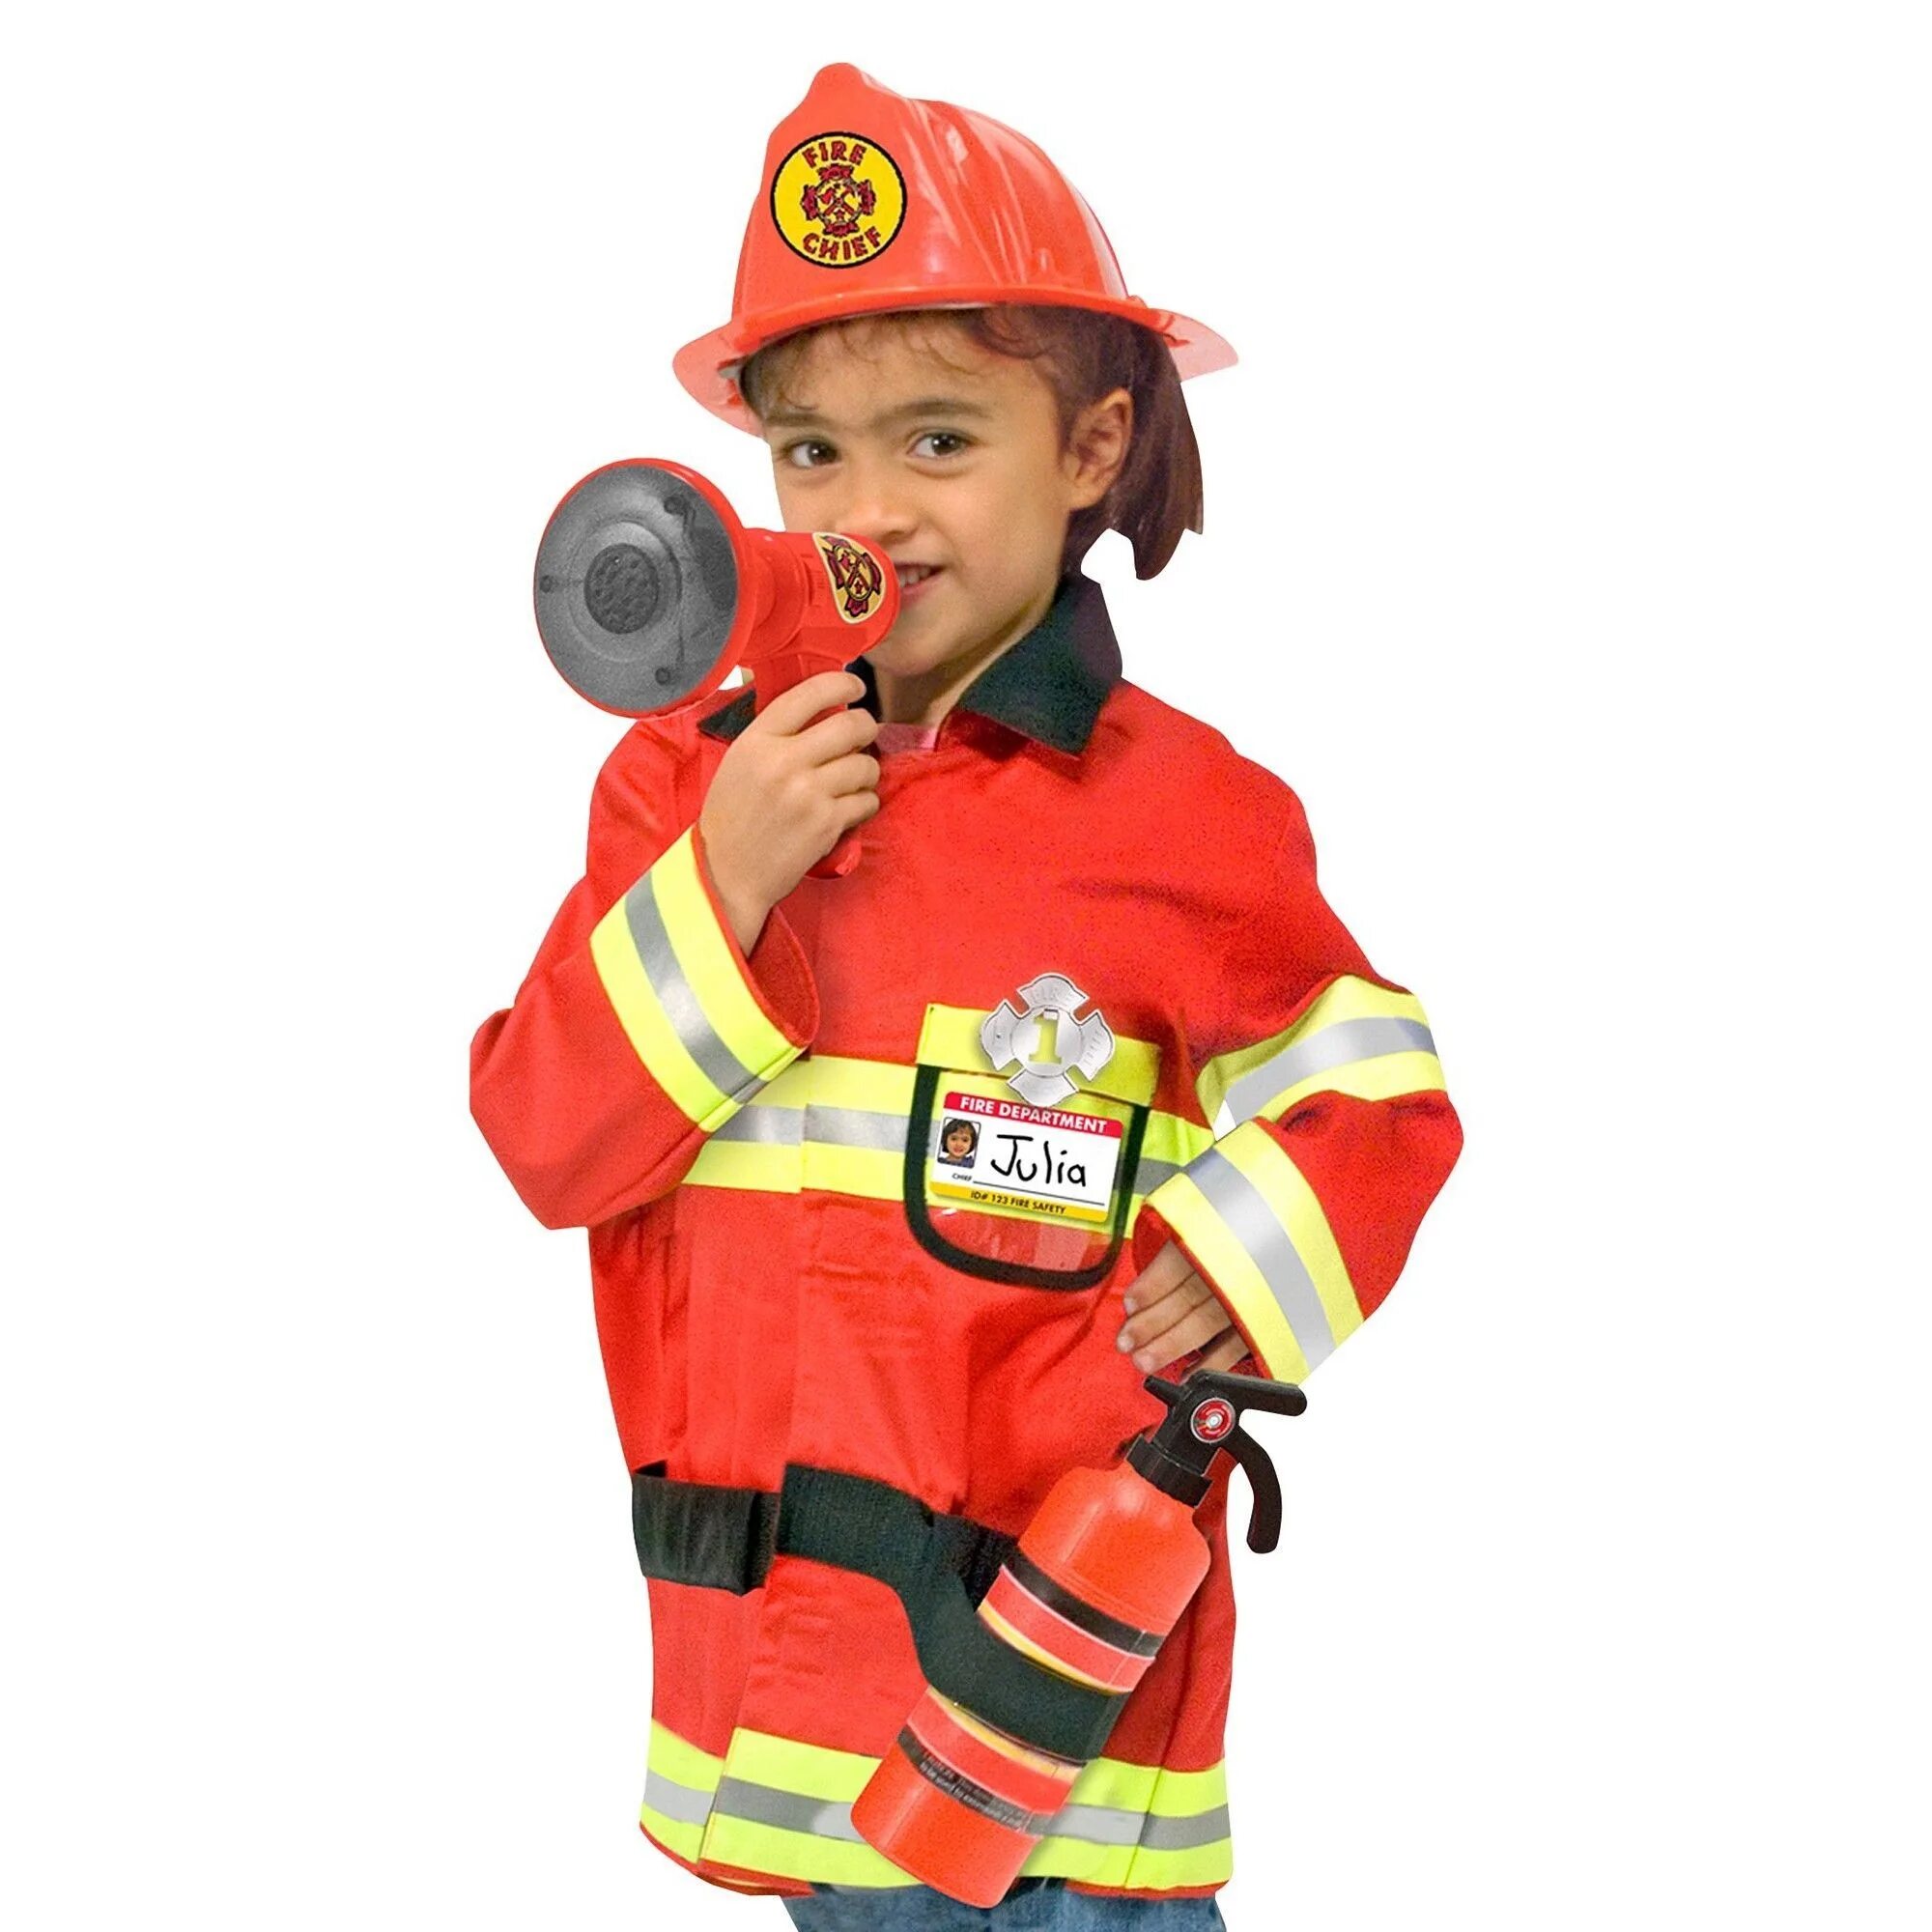 Пожарные ролевая игра. Костюм Melissa&Doug пожарный. Костюм пожарника Сэма. Пожарный костюм для детей для детей. Малыш в костюме пожарного.